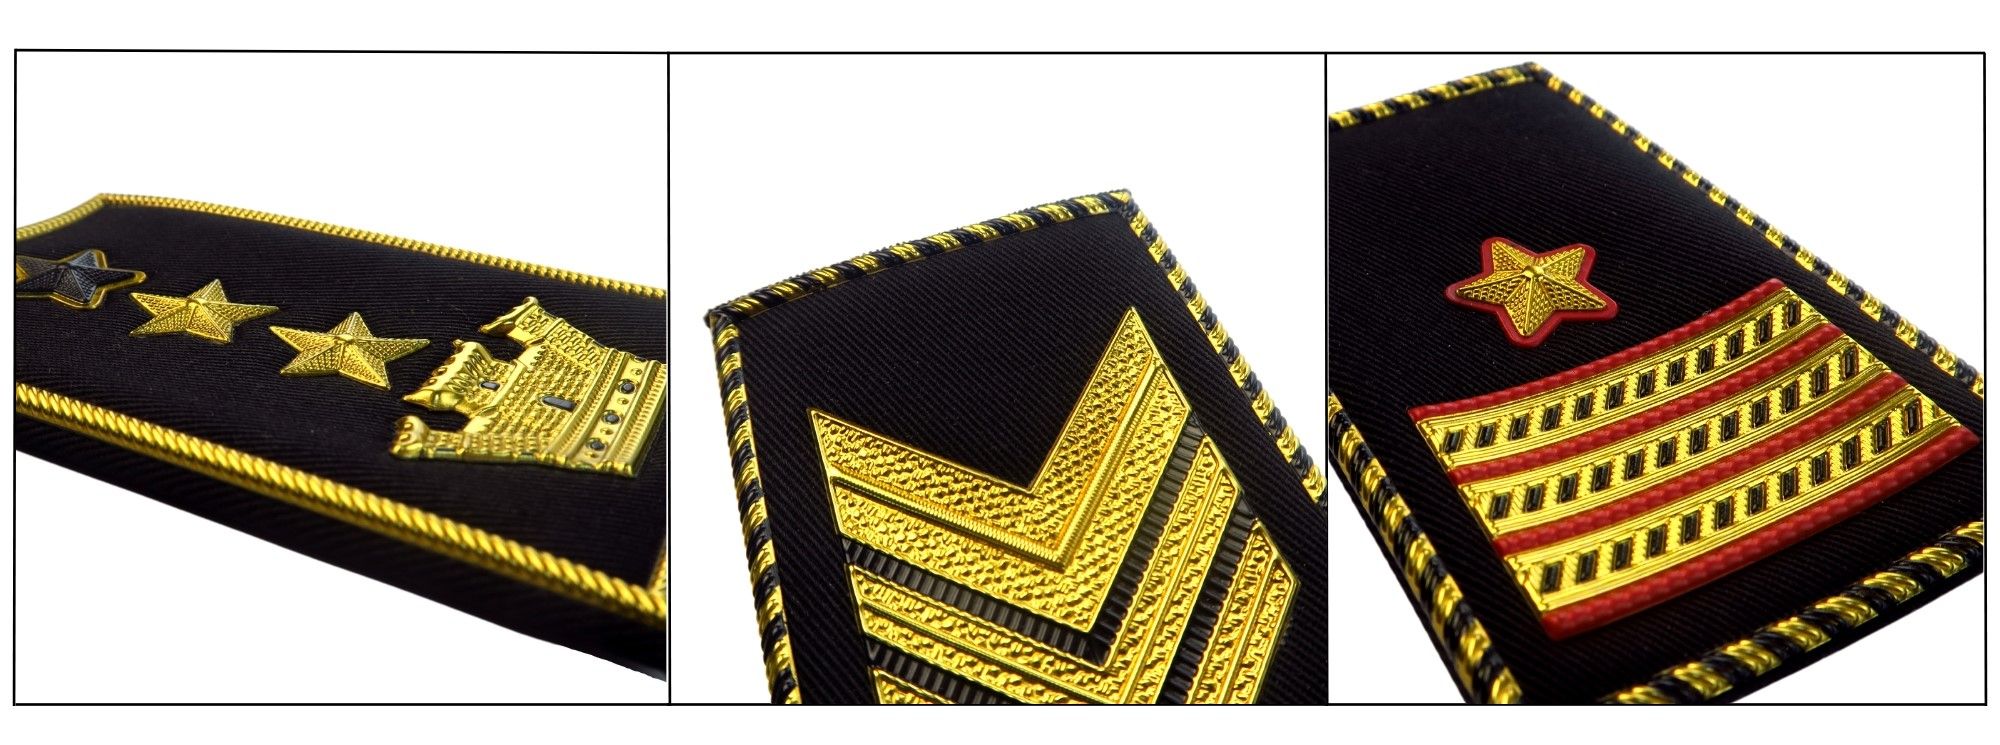 Lederskap symbolisert, marin kommando skreddersydd i kapteins epåletter.